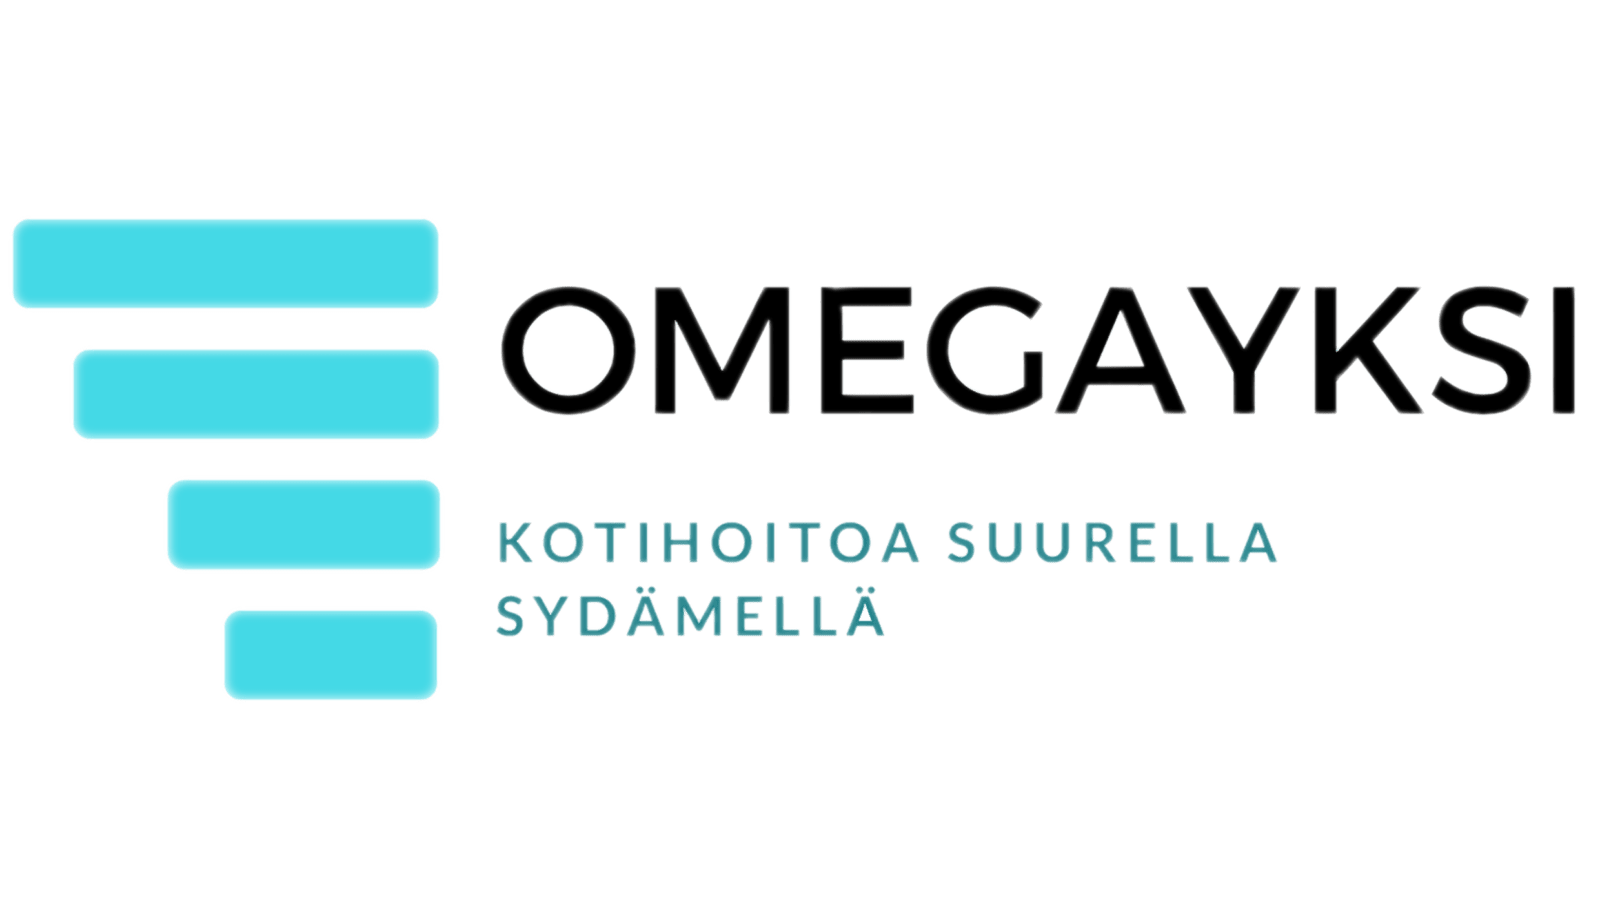 Omegayksi omavalvonta Varsinais-Suomen alue päivitetty 29.11.2022